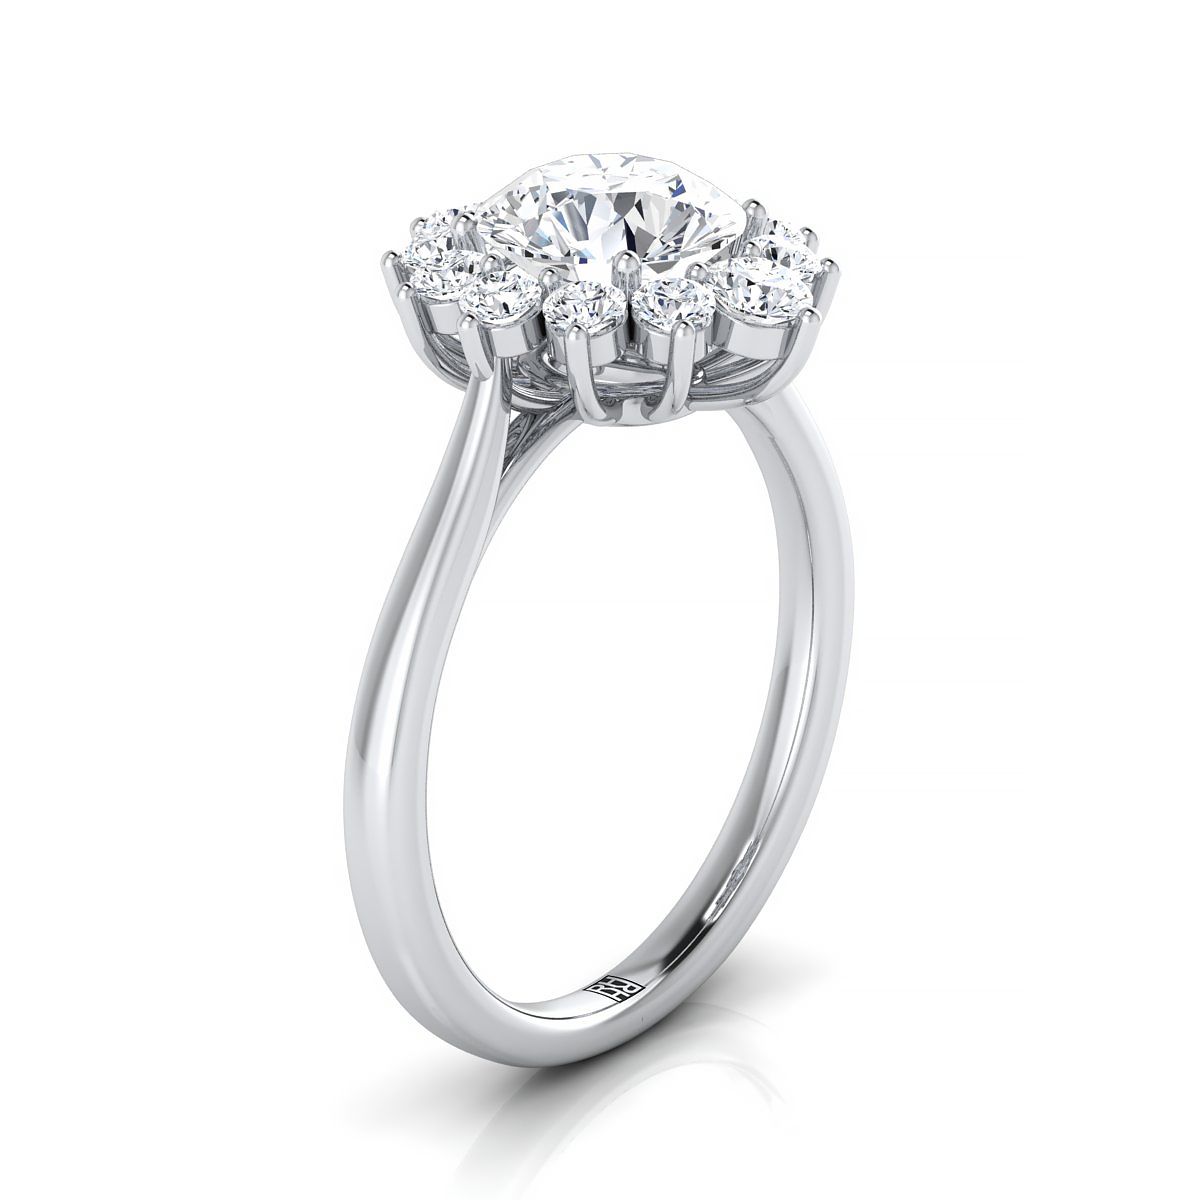 Platinum Round Brilliant Citrine Floral Diamond Halo Engagement Ring -1/2ctw